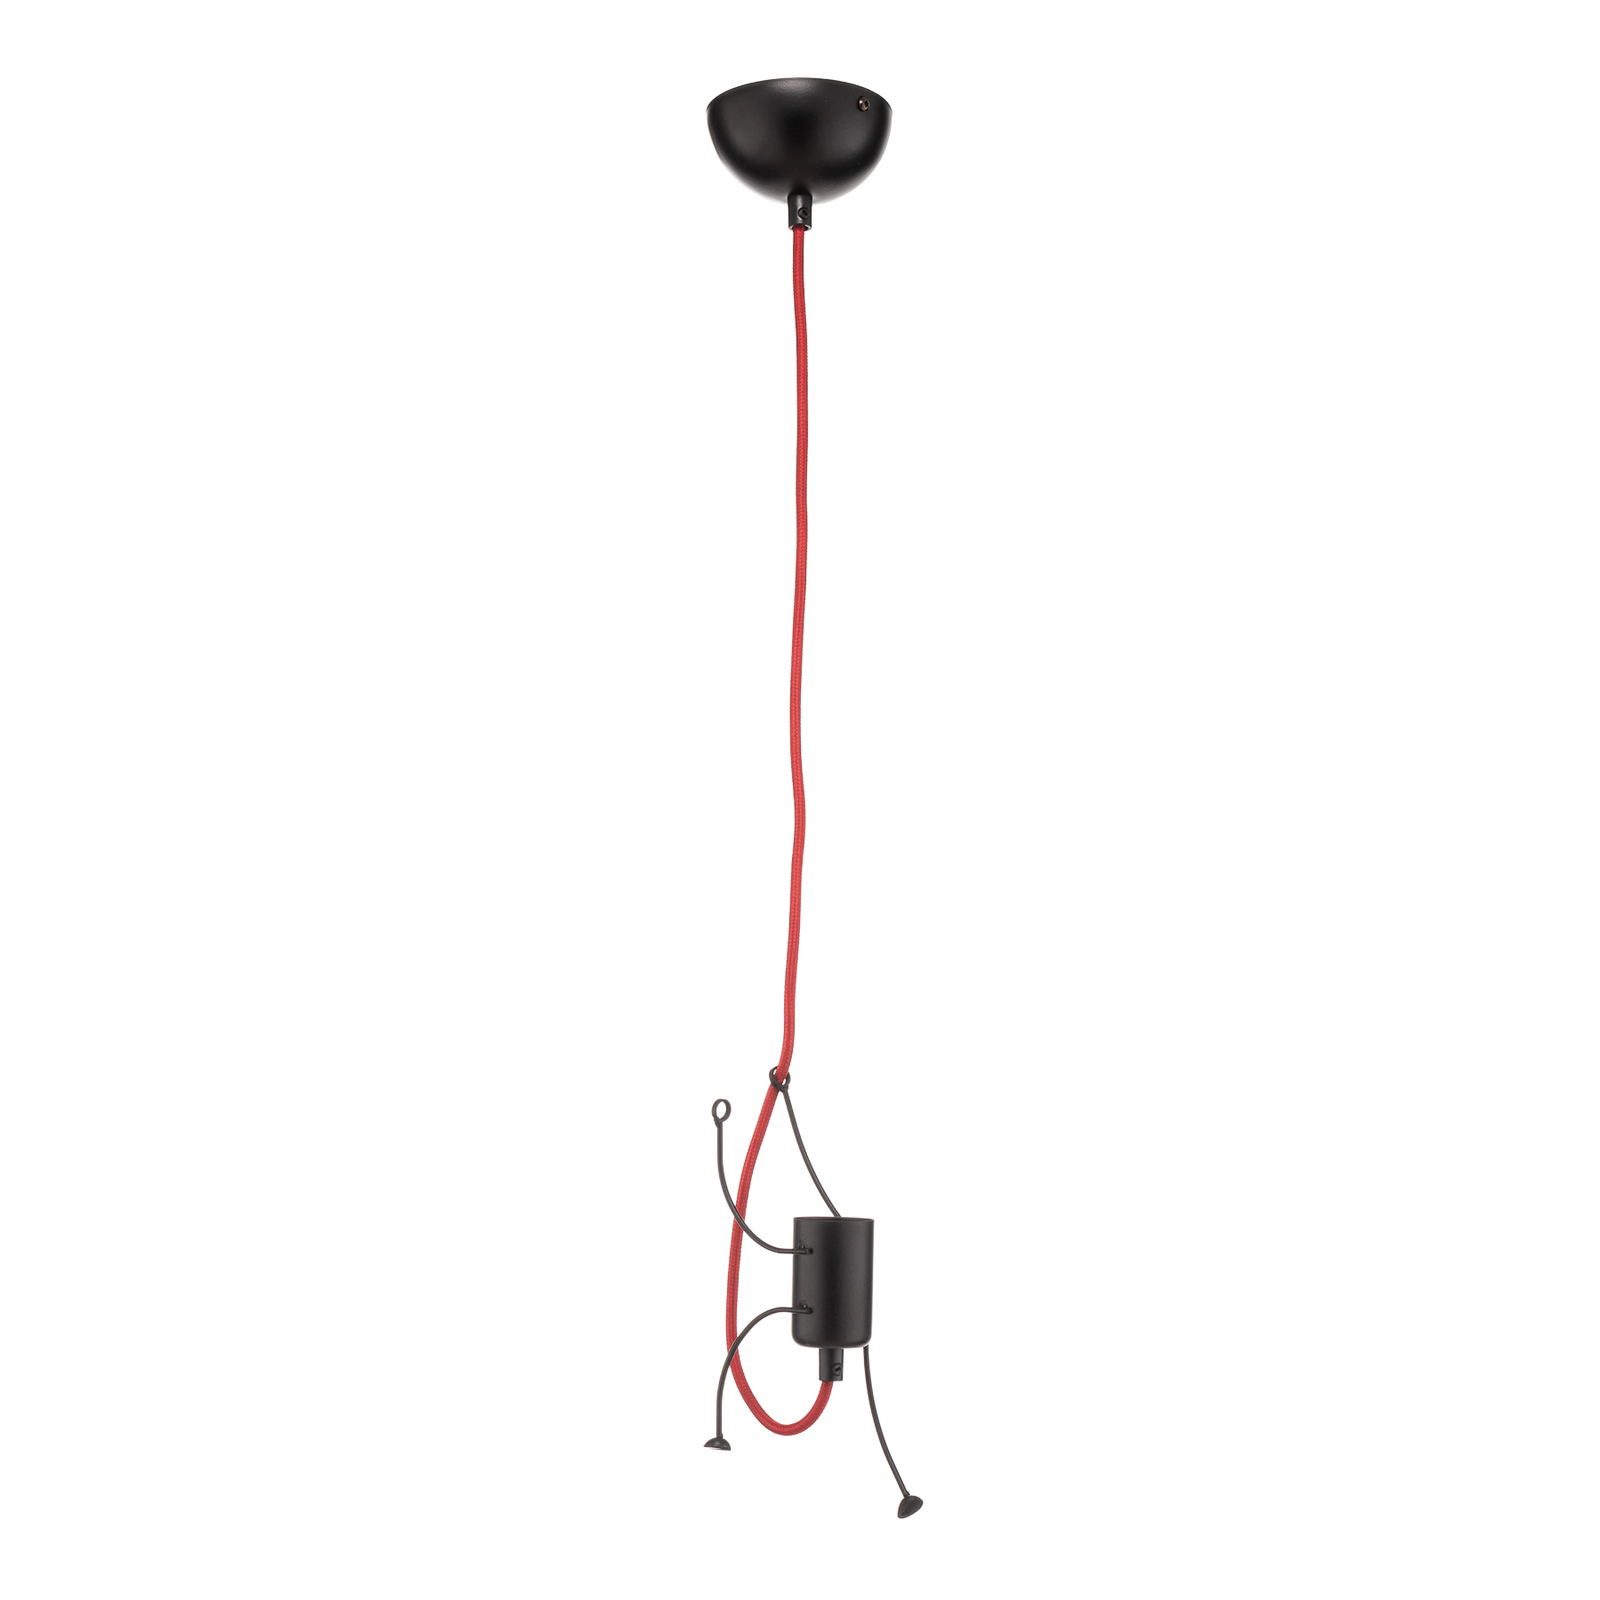 Bobi 1 hængelampe i sort, rødt kabel, 1 lyskilde